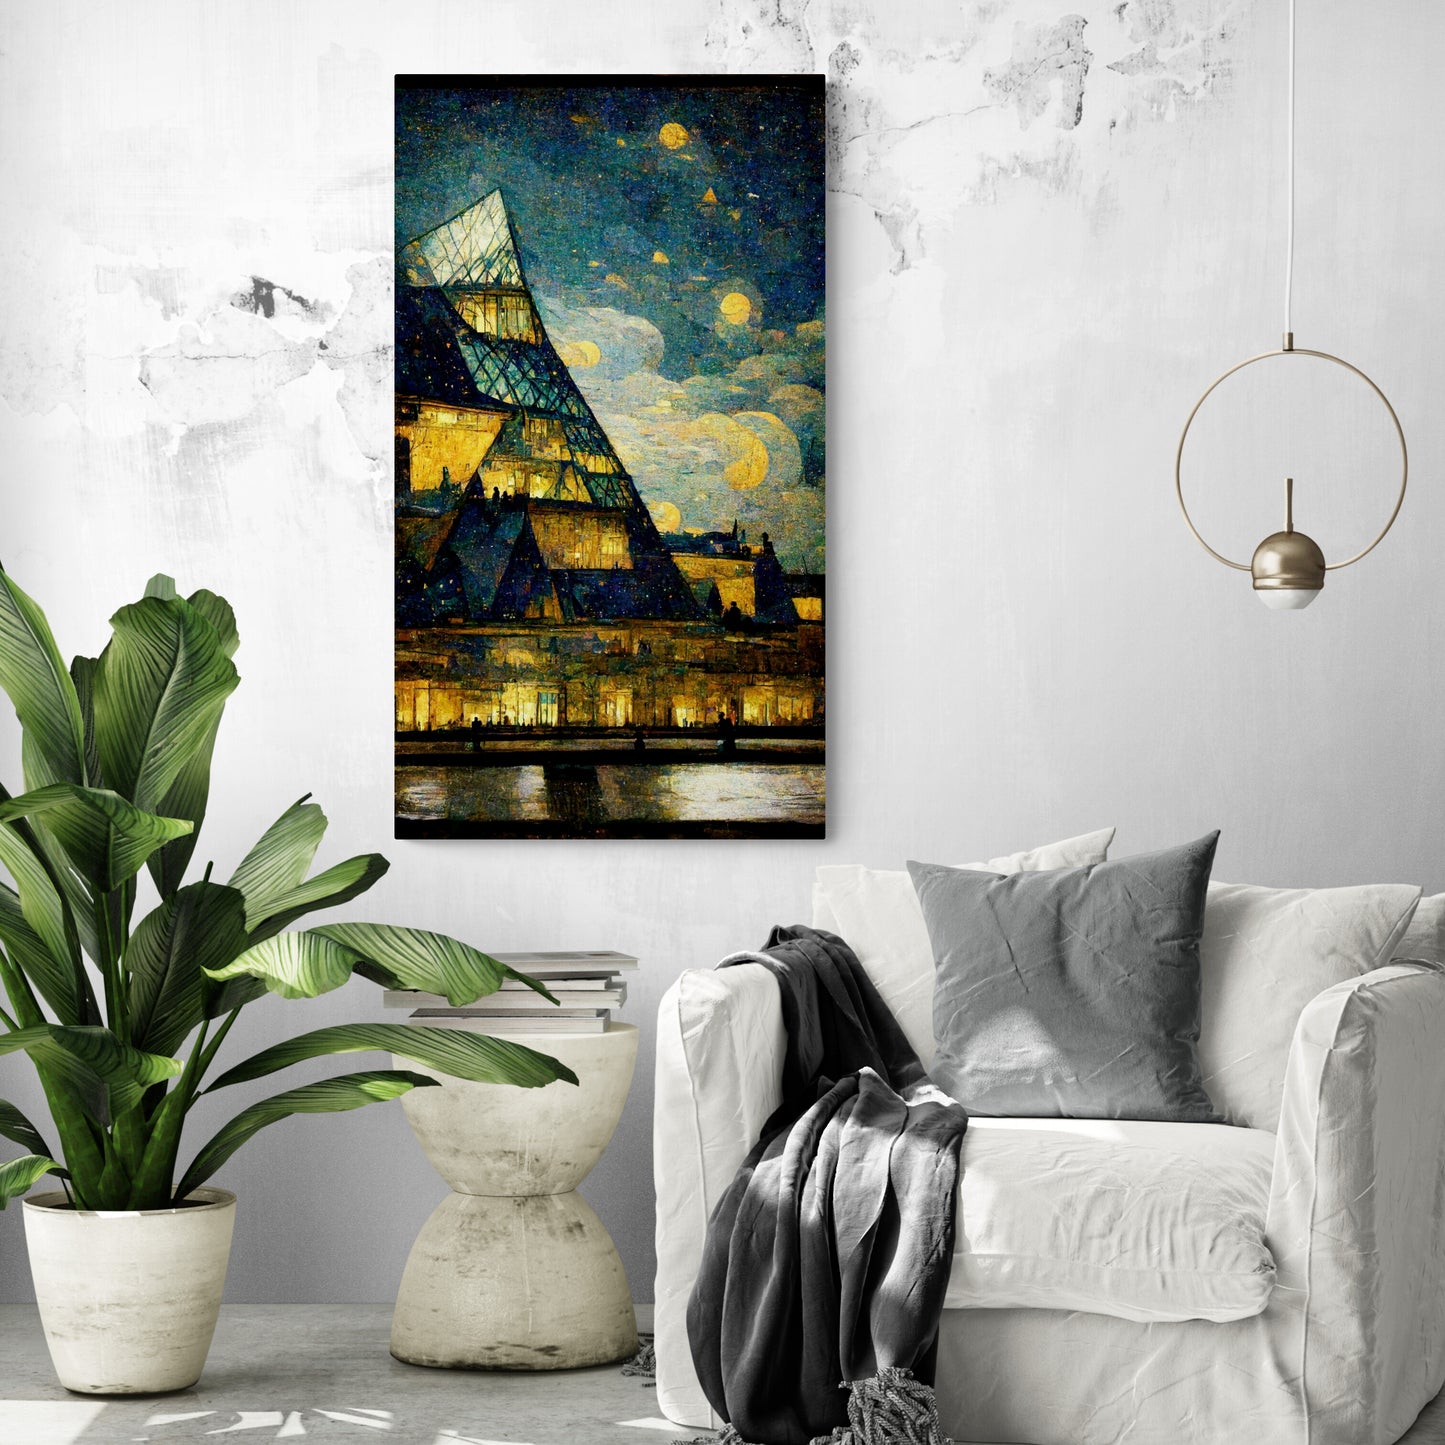 Un grand et beau tableau dans un salon, le Louvre selon Van Gogh. La vision idyllique de l'avenir, où l'art et la culture peuvent être intégrés de manière harmonieuse à la vie quotidienne des gens. Le musée du Louvre s'élève fièrement, transfiguré en un immeuble scintillant, illuminé par les lumières chaleureuses de ses habitants